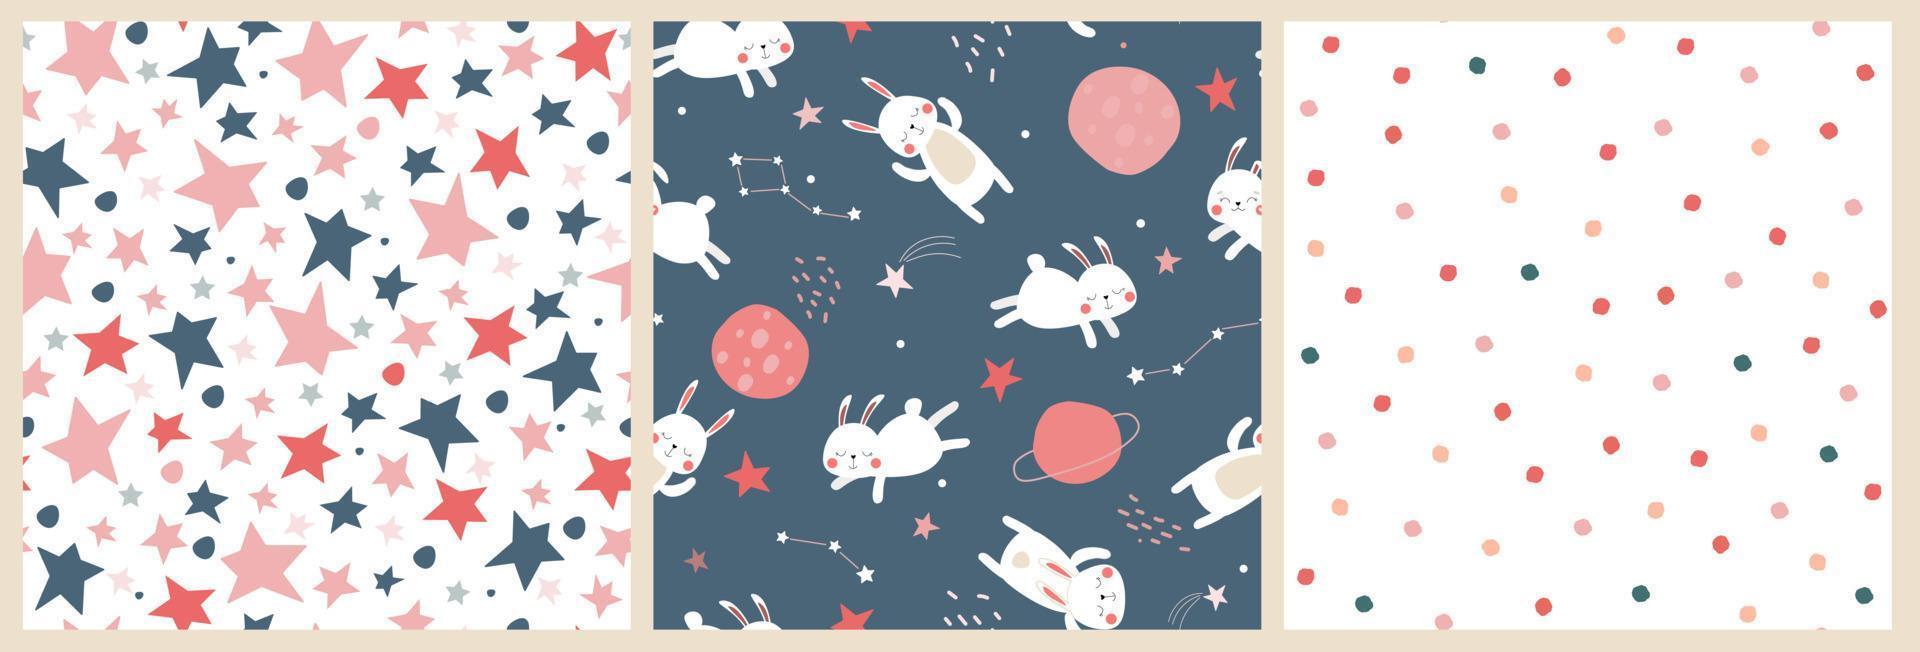 un conjunto de patrones sin fisuras con un lindo estampado de bebé con liebres en el espacio. los conejos dormidos vuelan en el cielo con estrellas y planetas. gráficos vectoriales vector